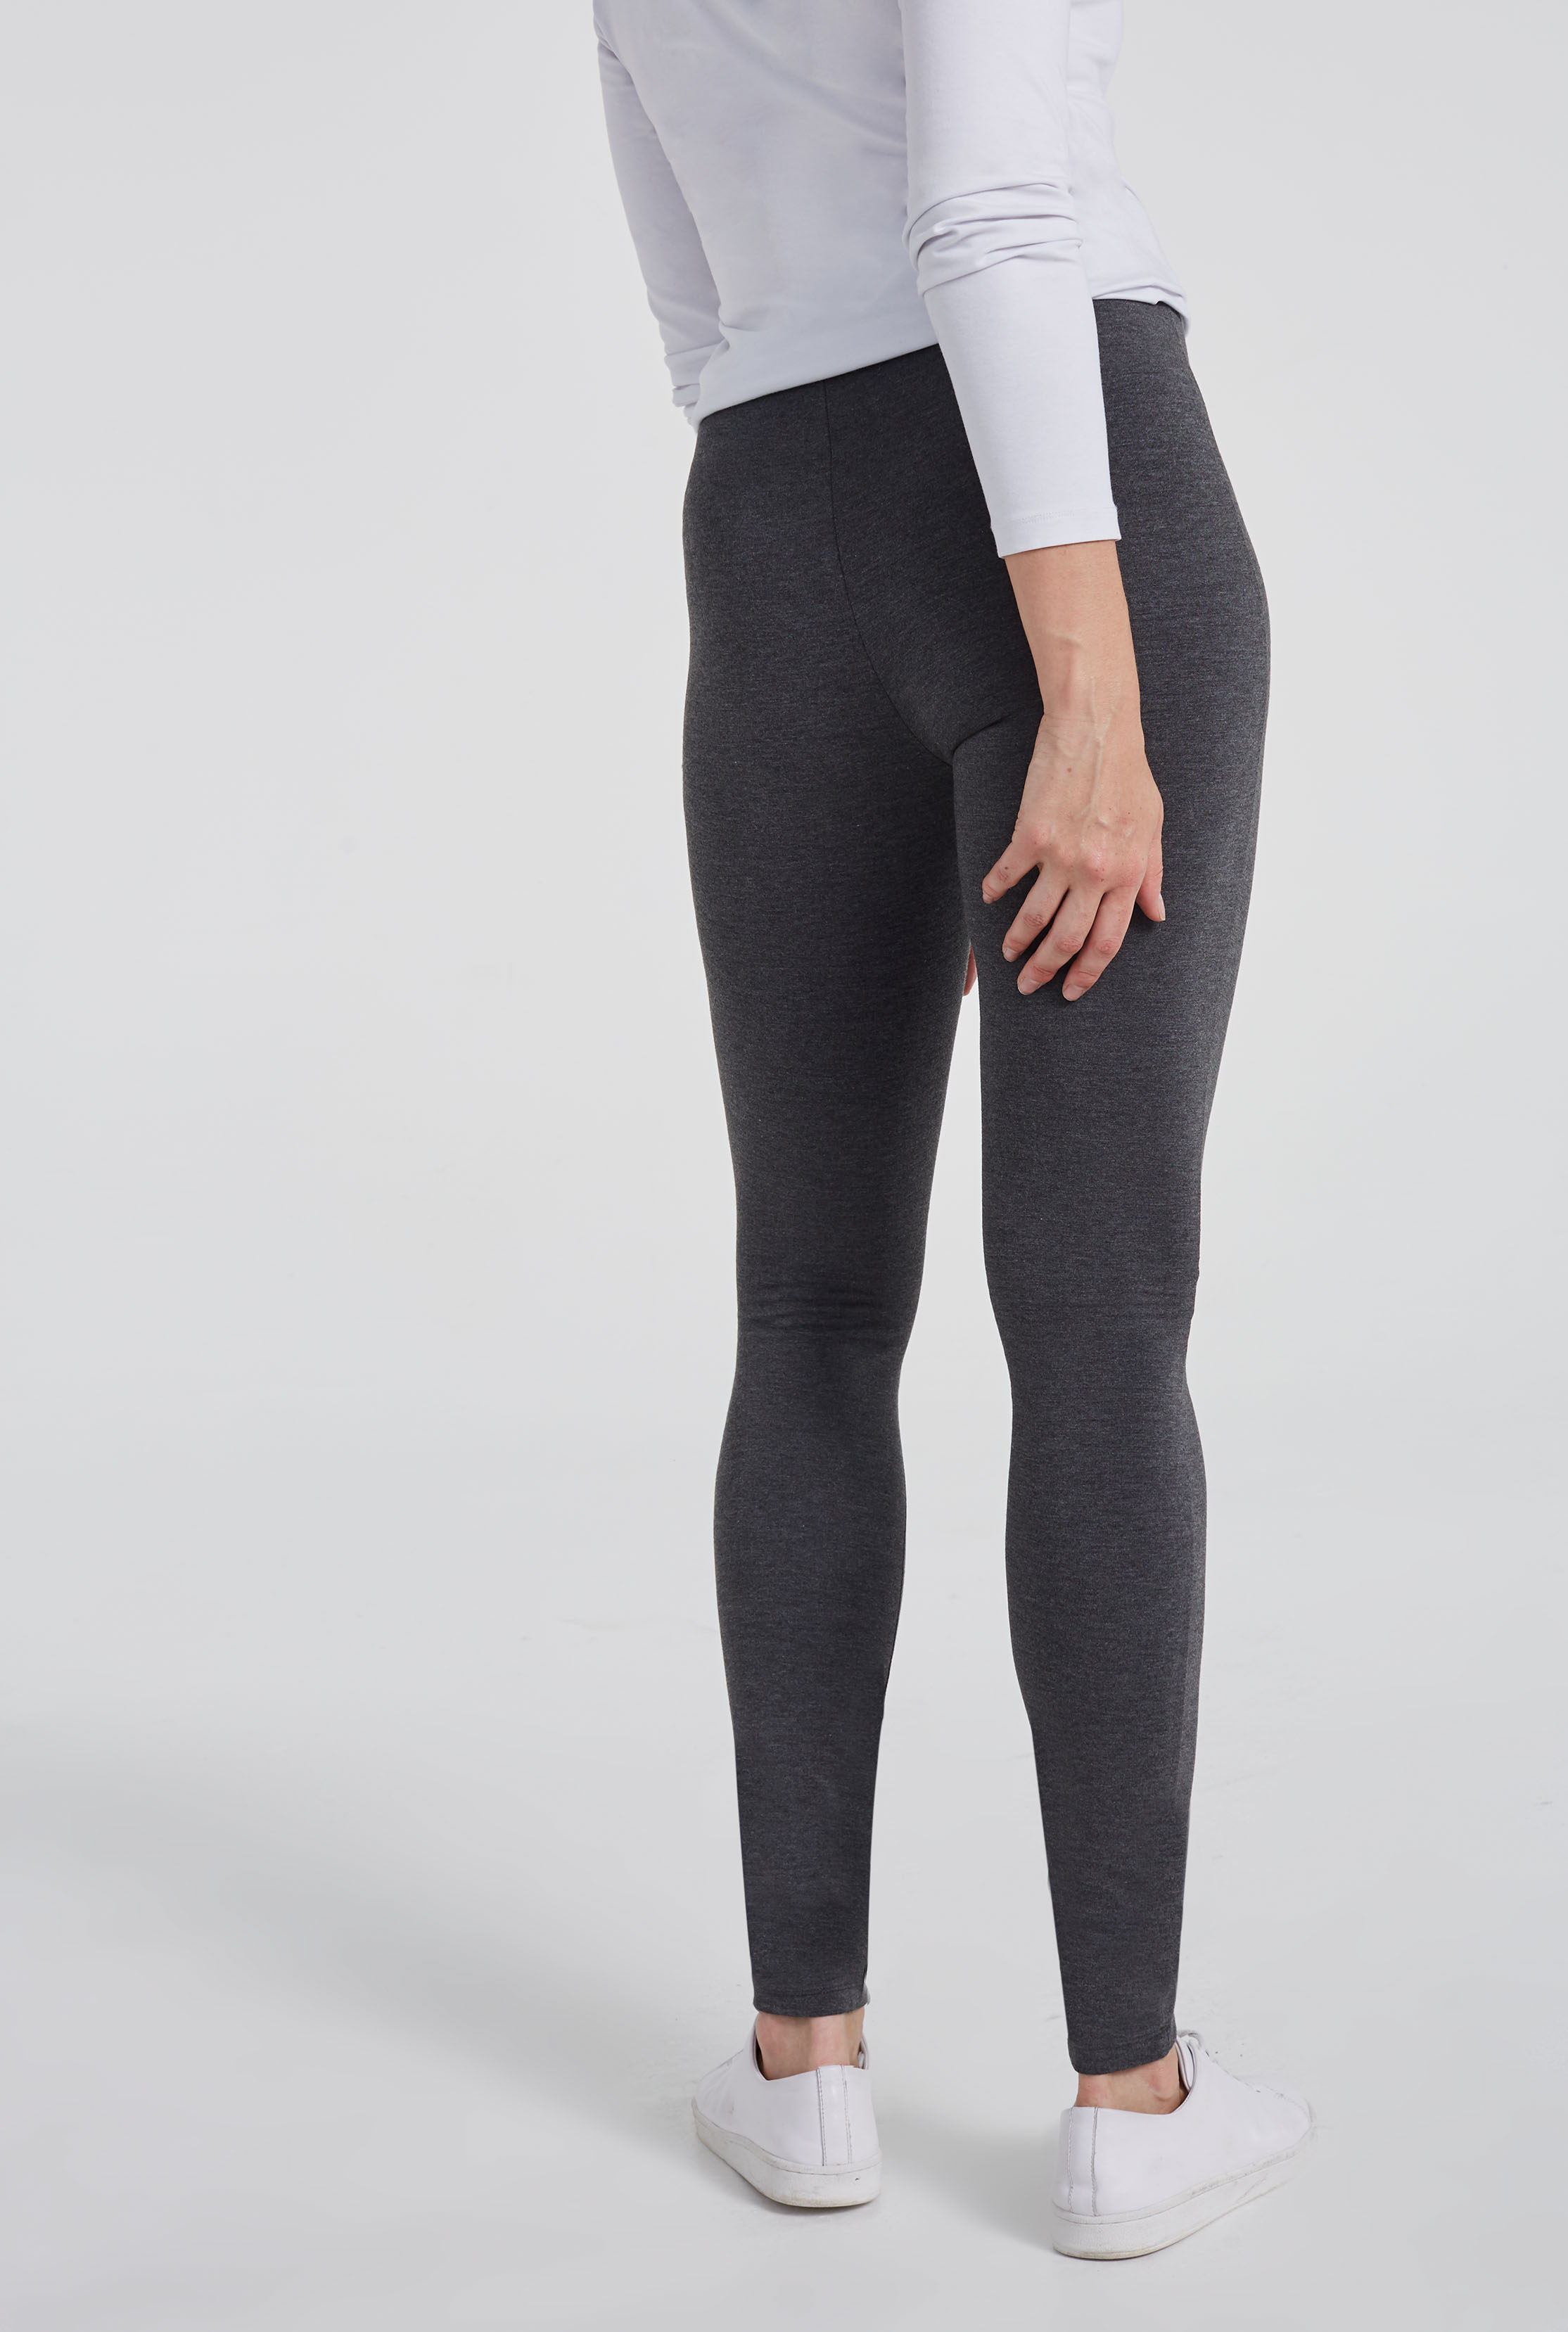 Discover 133+ best leggings for tall women latest